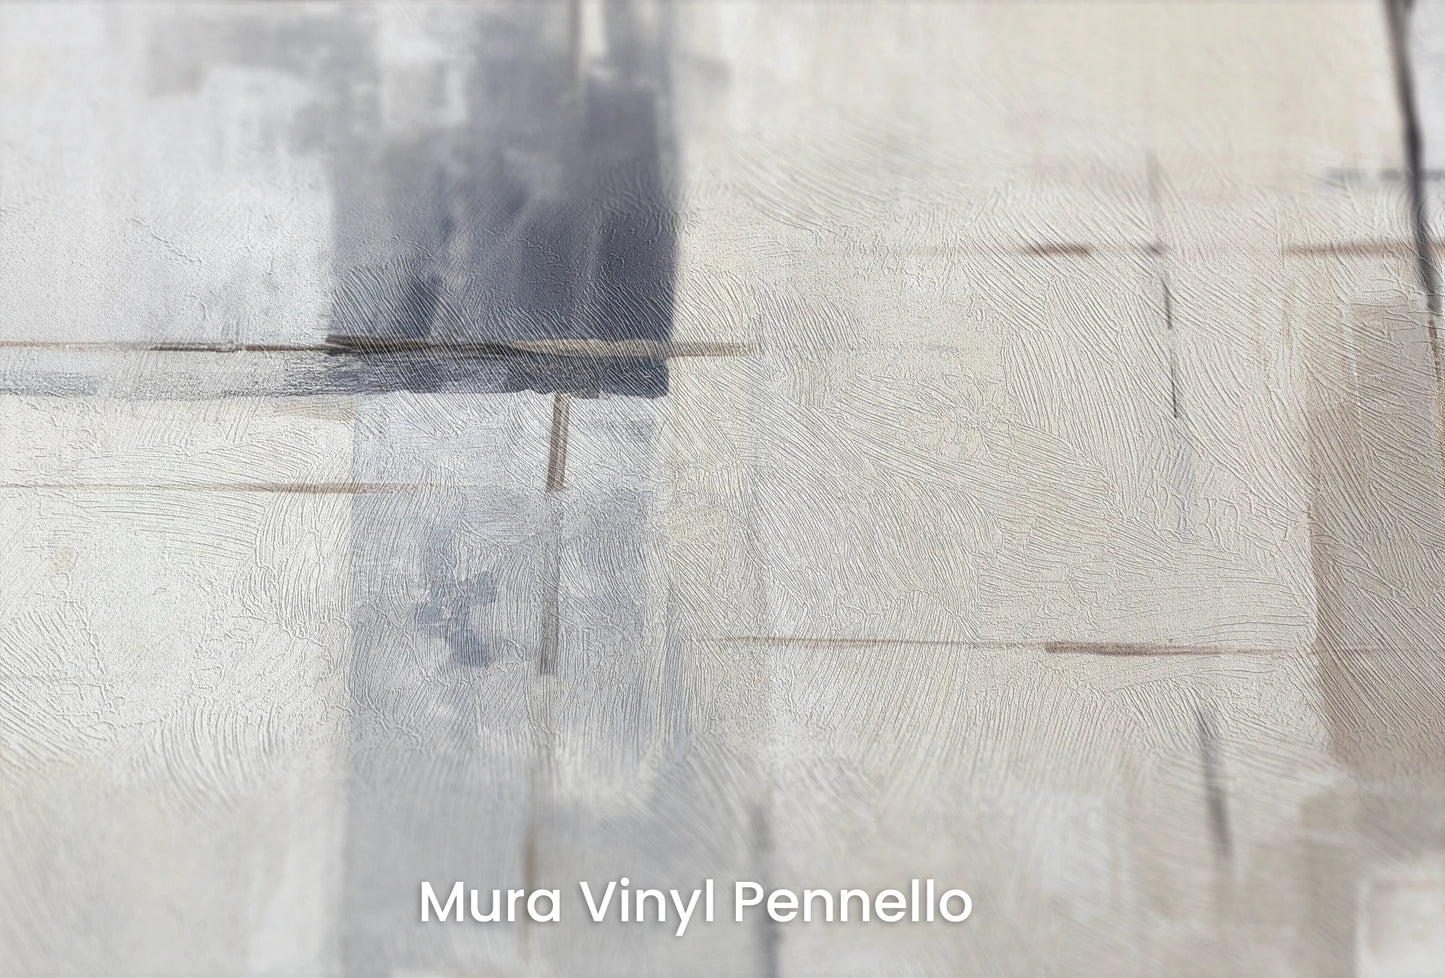 Zbliżenie na artystyczną fototapetę o nazwie Elemental Blocks na podłożu Mura Vinyl Pennello - faktura pociągnięć pędzla malarskiego.